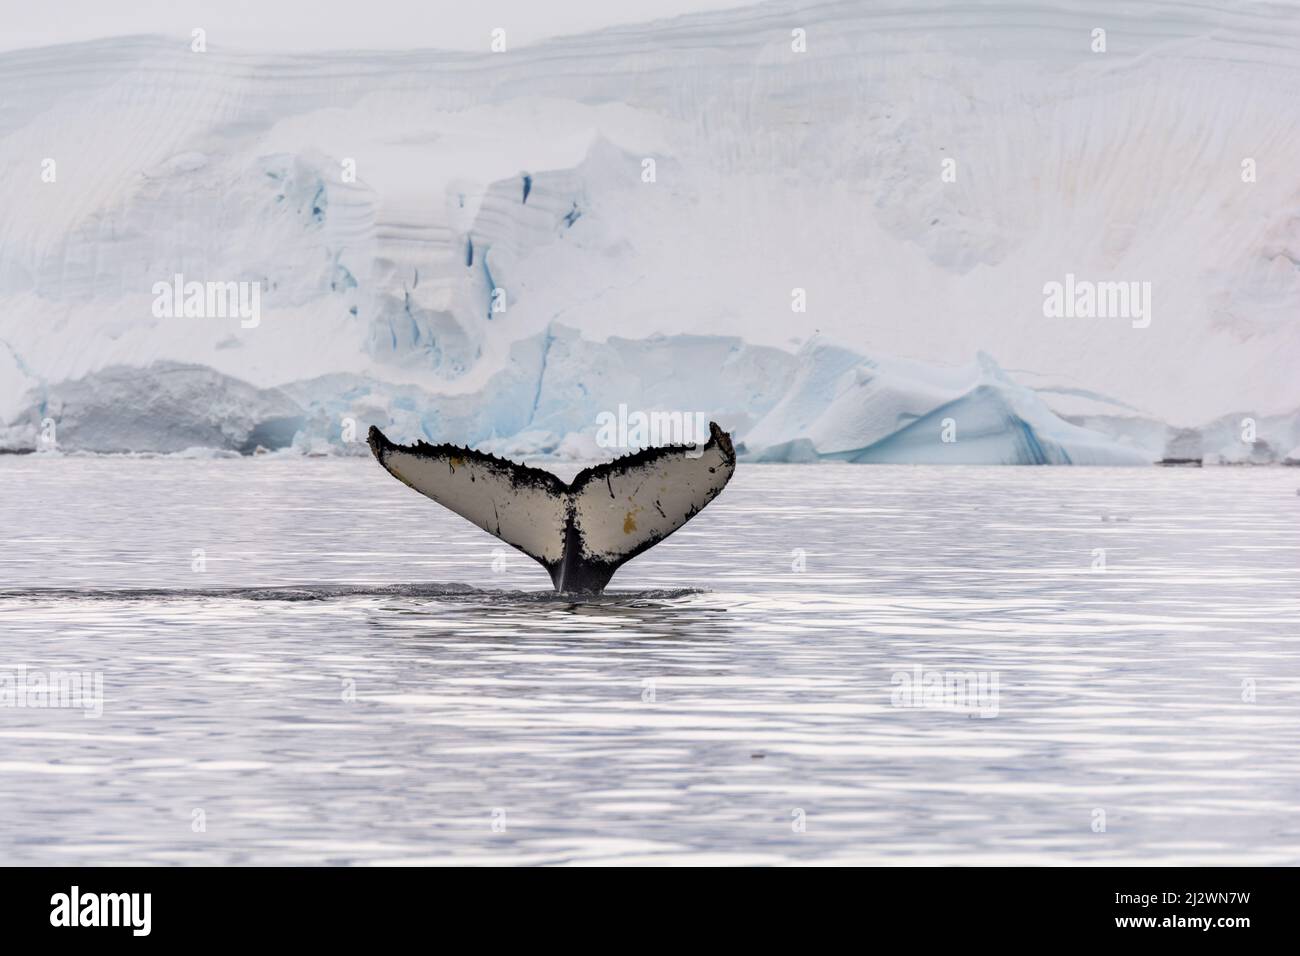 la cola de una ballena jorobada (Megaptera novaeangliae) visible sobre el agua mientras la ballena se sumerge, tomada en la Bahía Wilhelmina, Península Antártica Foto de stock